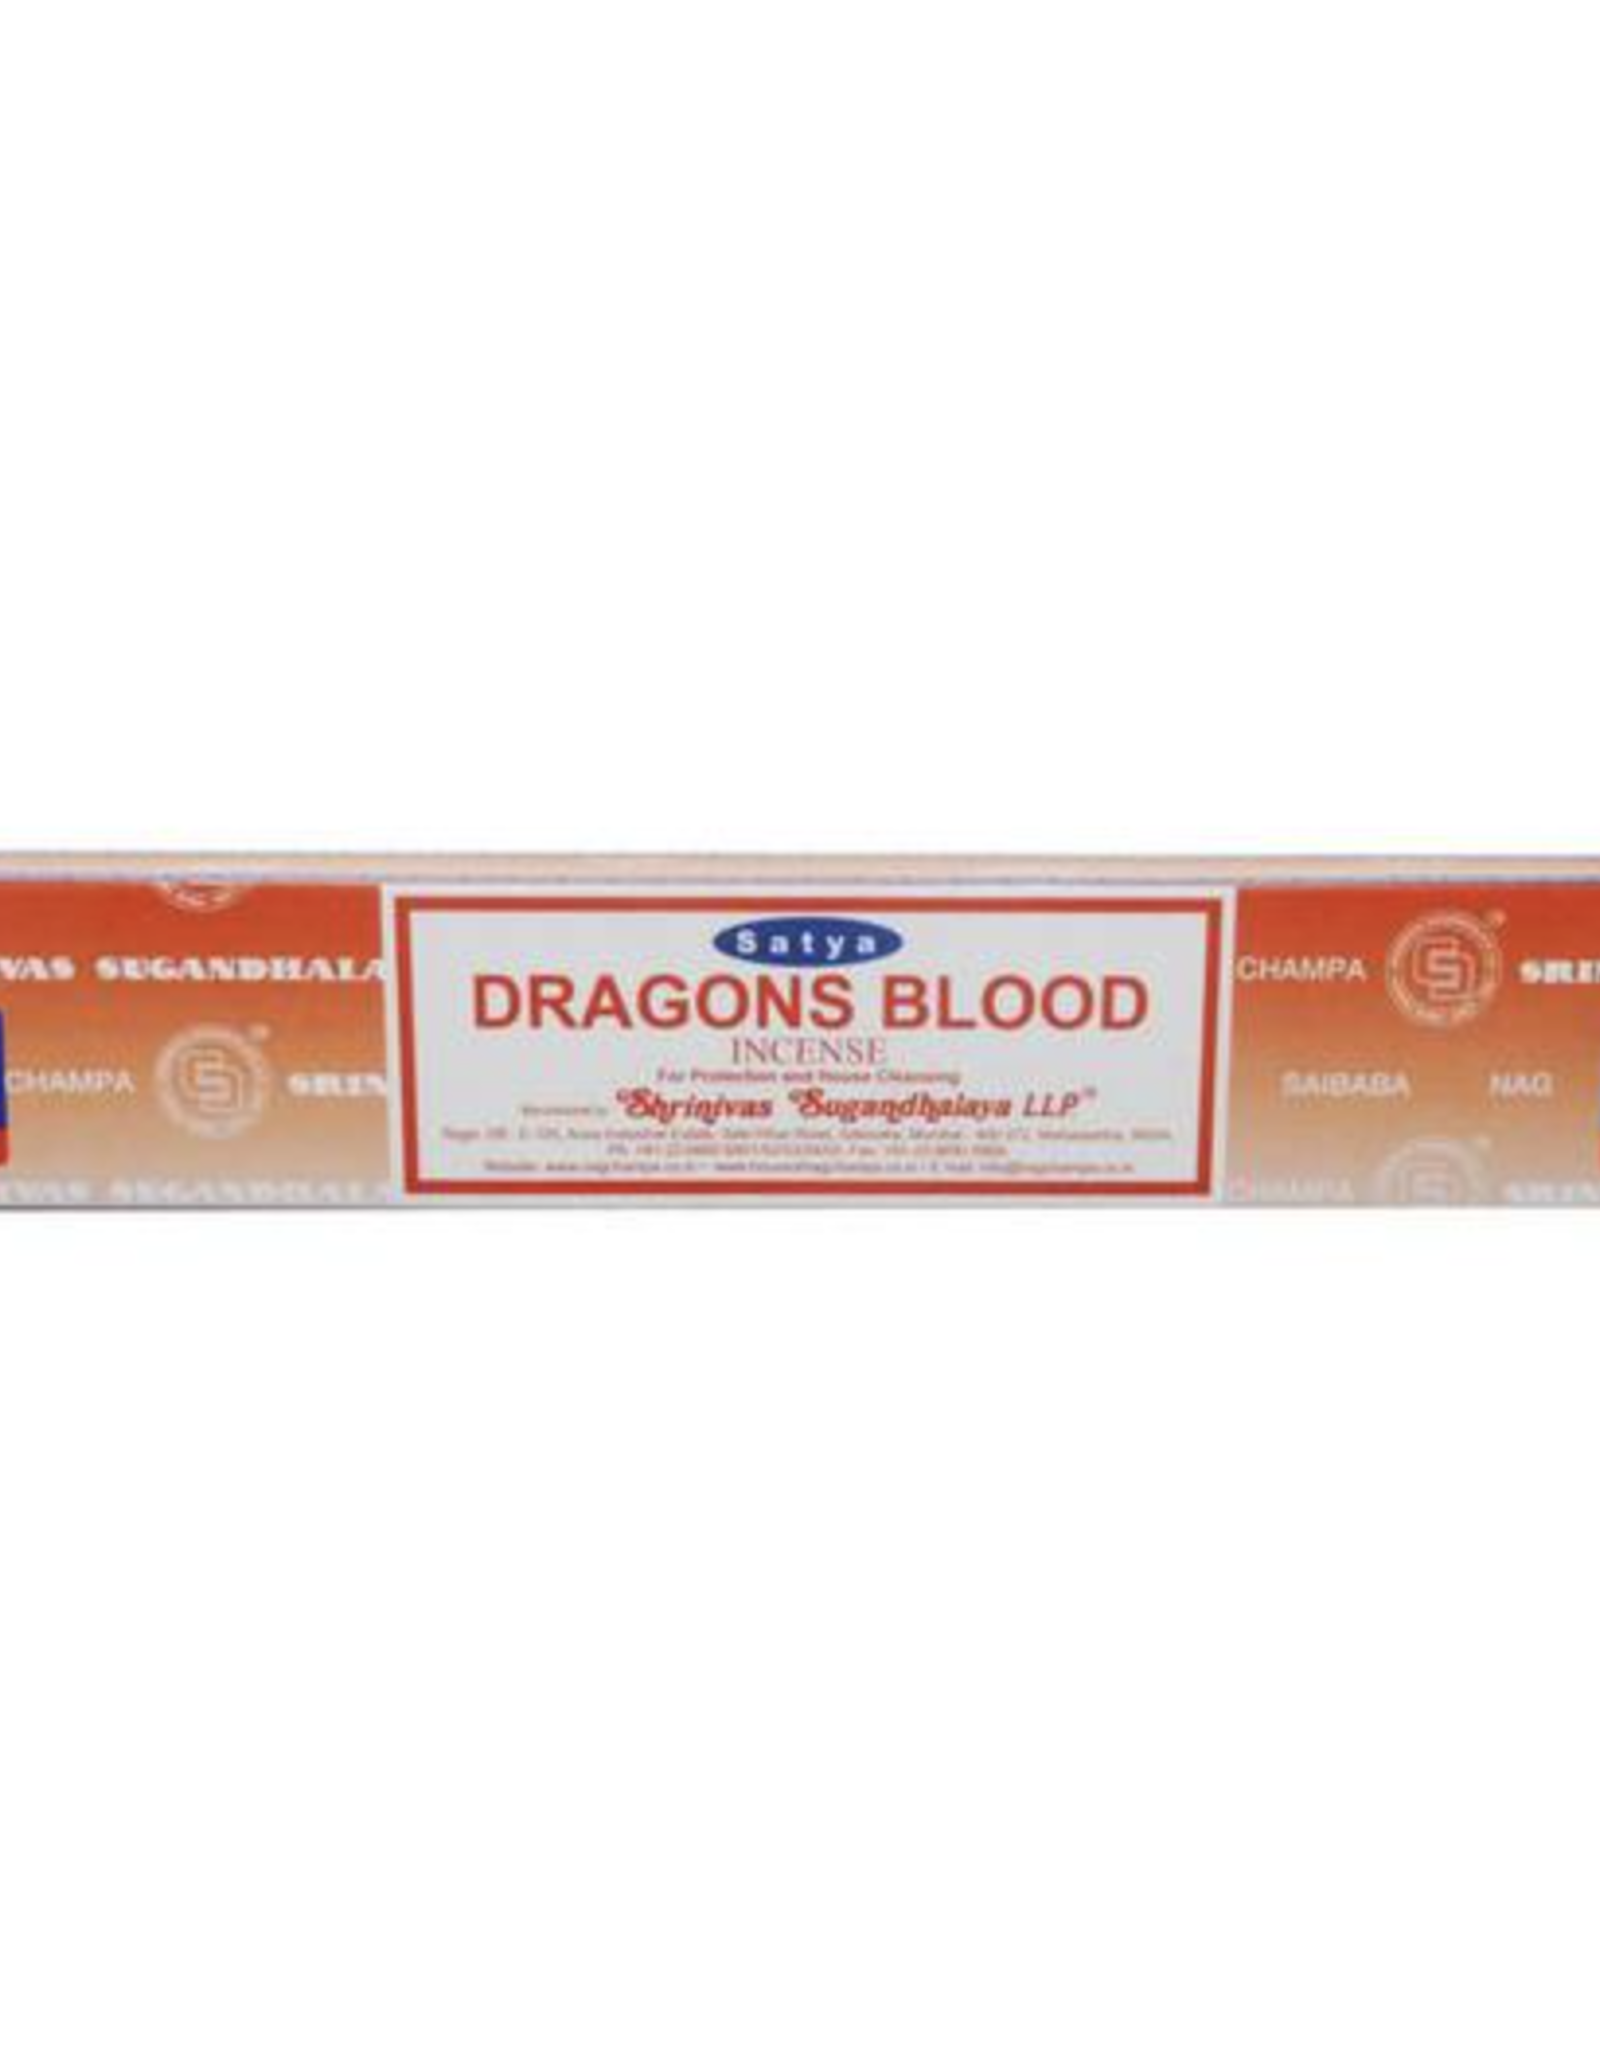 Satya Dragon's Blood - 15g